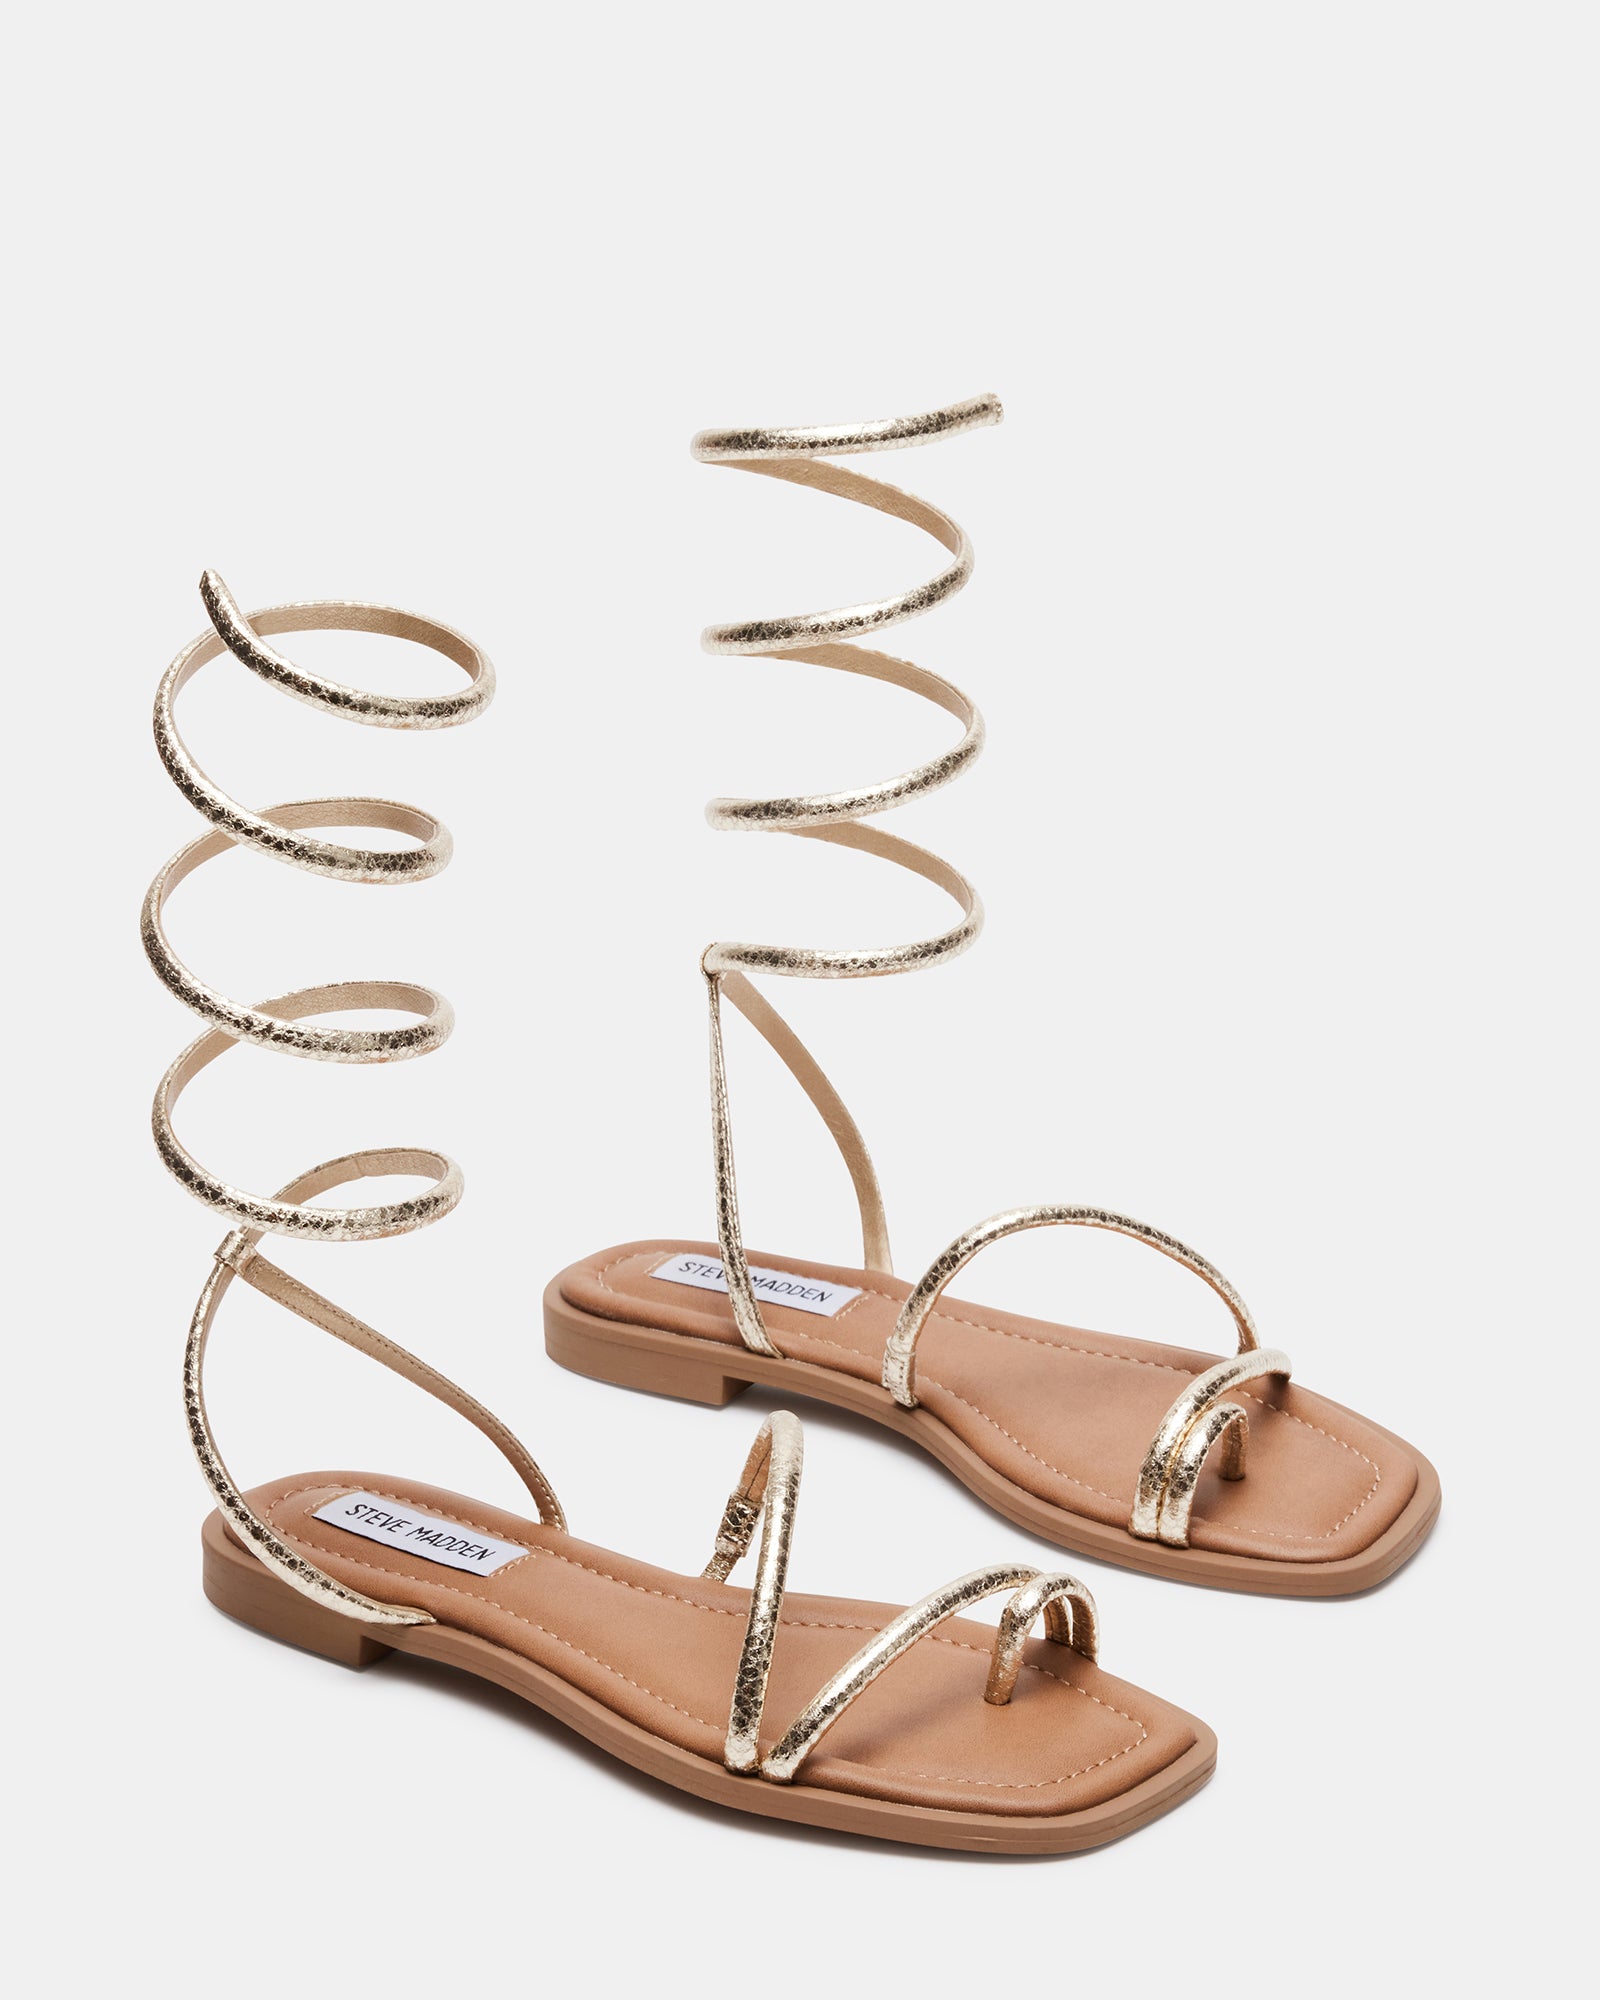 ANTELLE Gold Snake Strappy Thong Sandal | Women's Sandals – Steve Madden